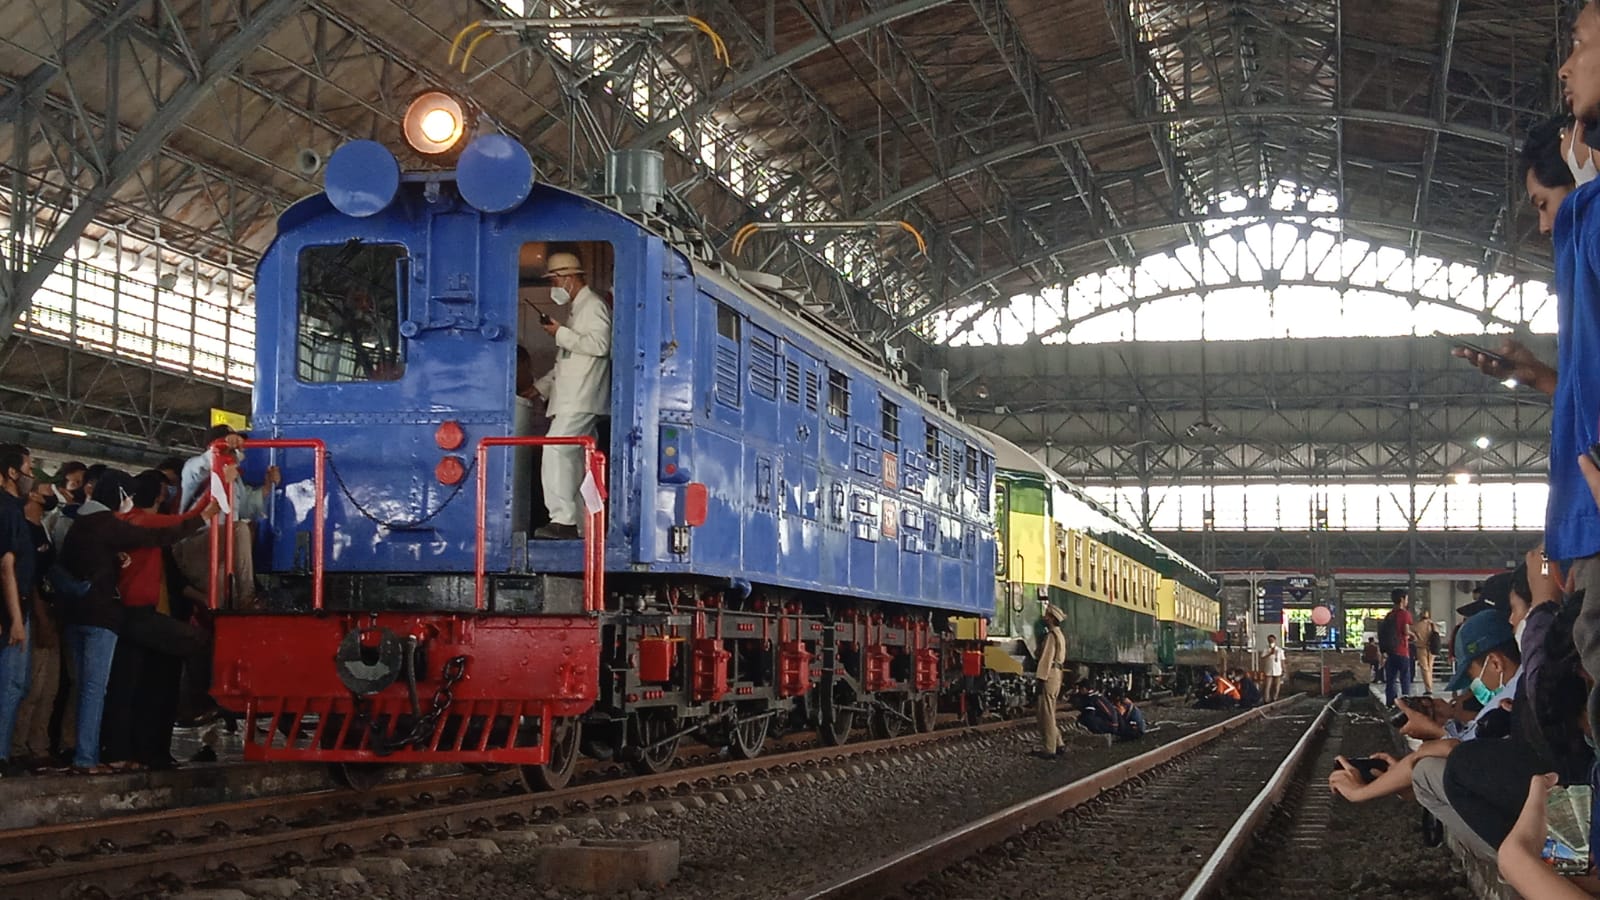 lokomotif Bonbon dan kereta Djoko Kendil saat di Stasiun Tanjung Priok